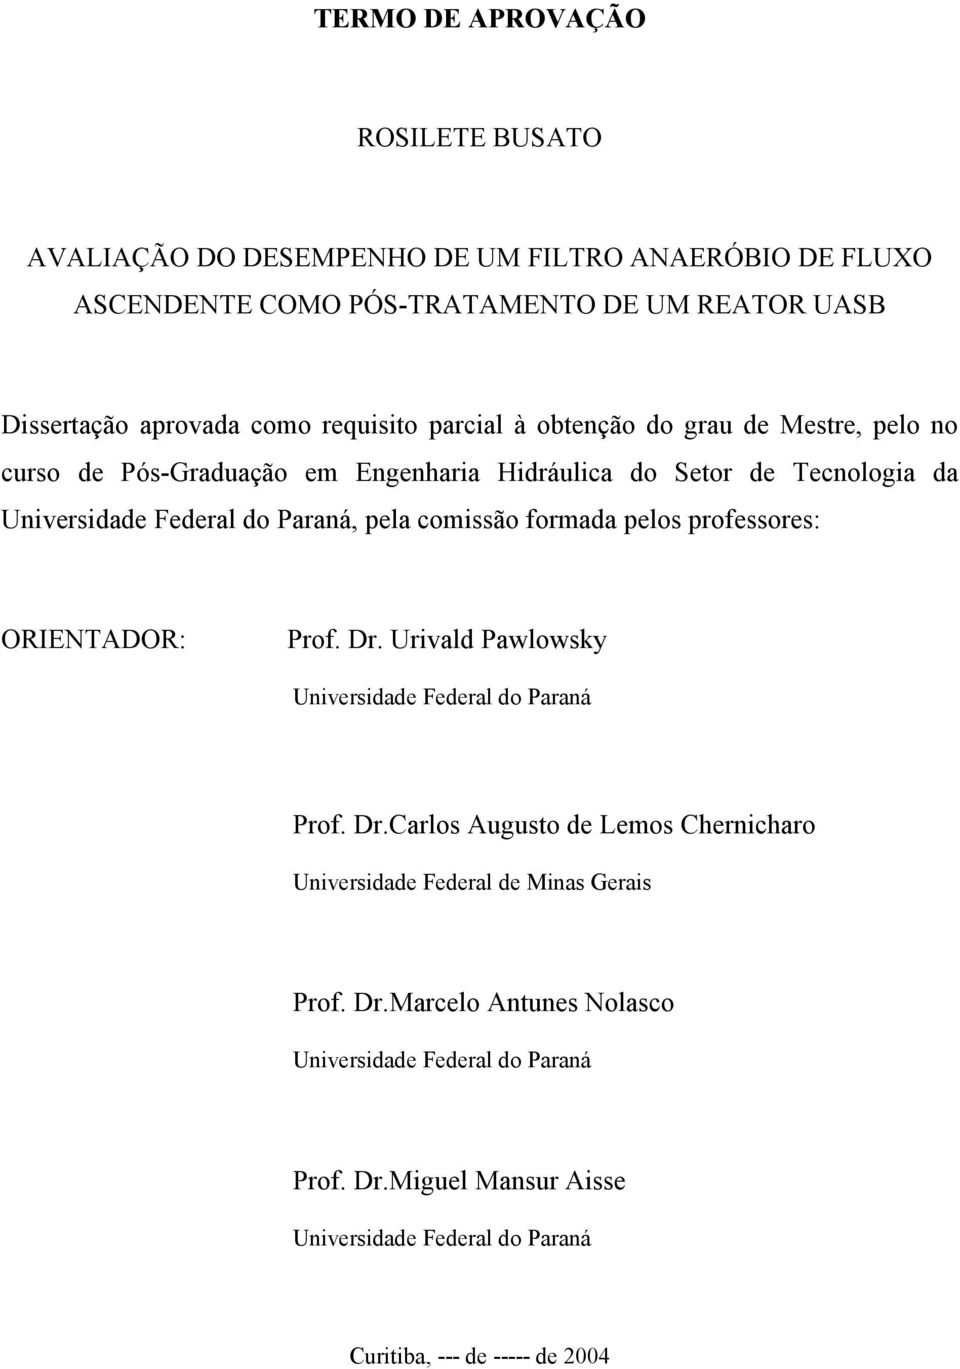 comissão formada pelos professores: ORIENTADOR: Prof. Dr. Urivald Pawlowsky Universidade Federal do Paraná Prof. Dr.Carlos Augusto de Lemos Chernicharo Universidade Federal de Minas Gerais Prof.